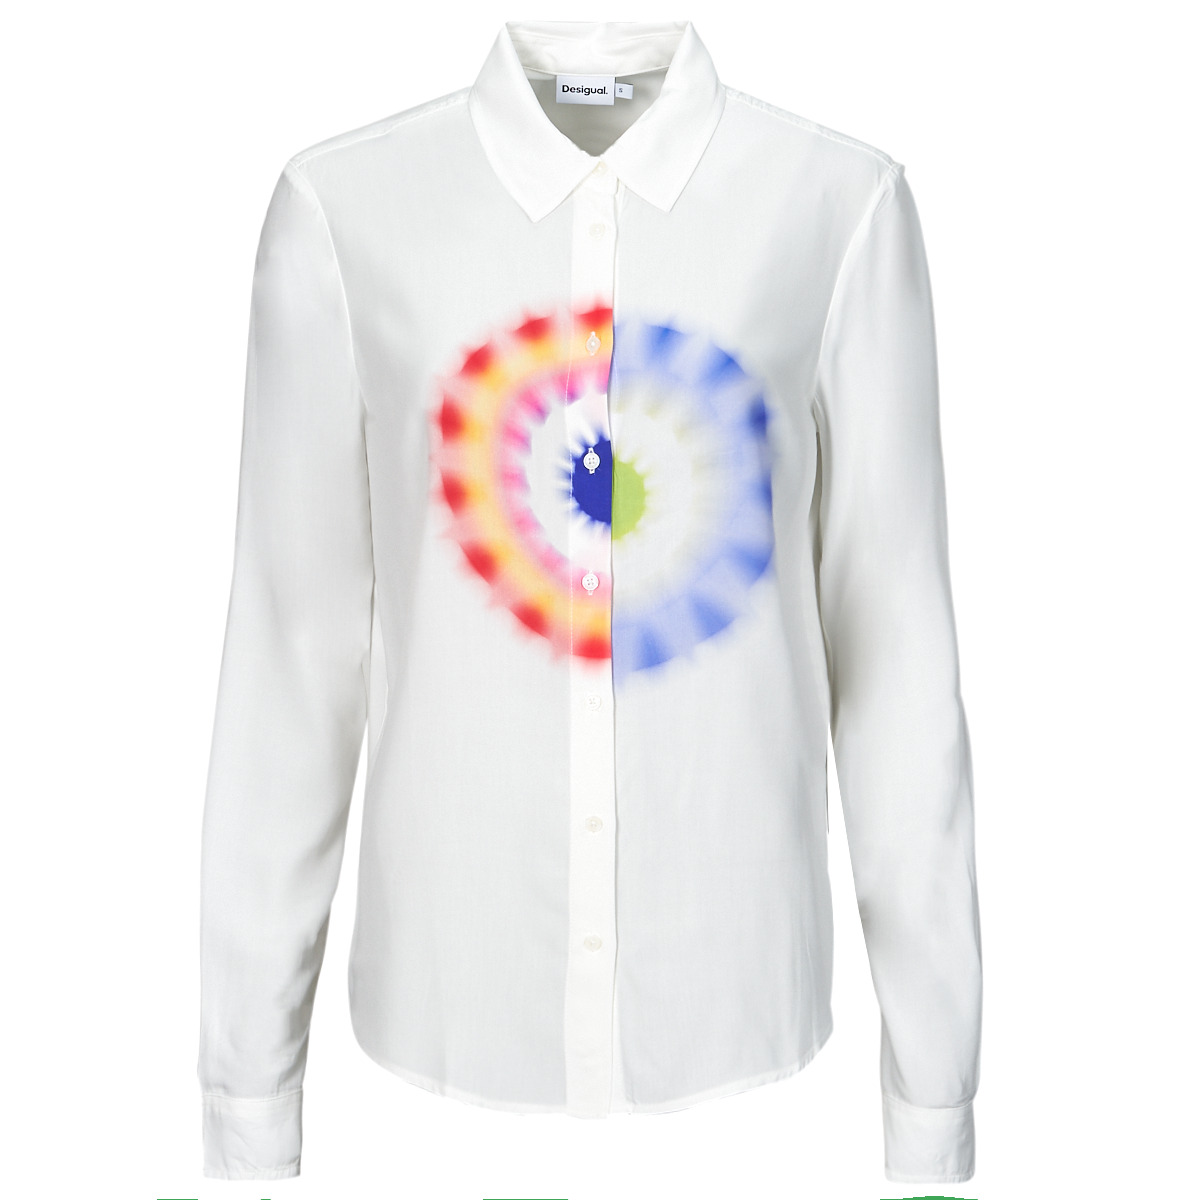 Vêtements Femme Chemises / Chemisiers Desigual CAM_OHM Blanc / Multicolore